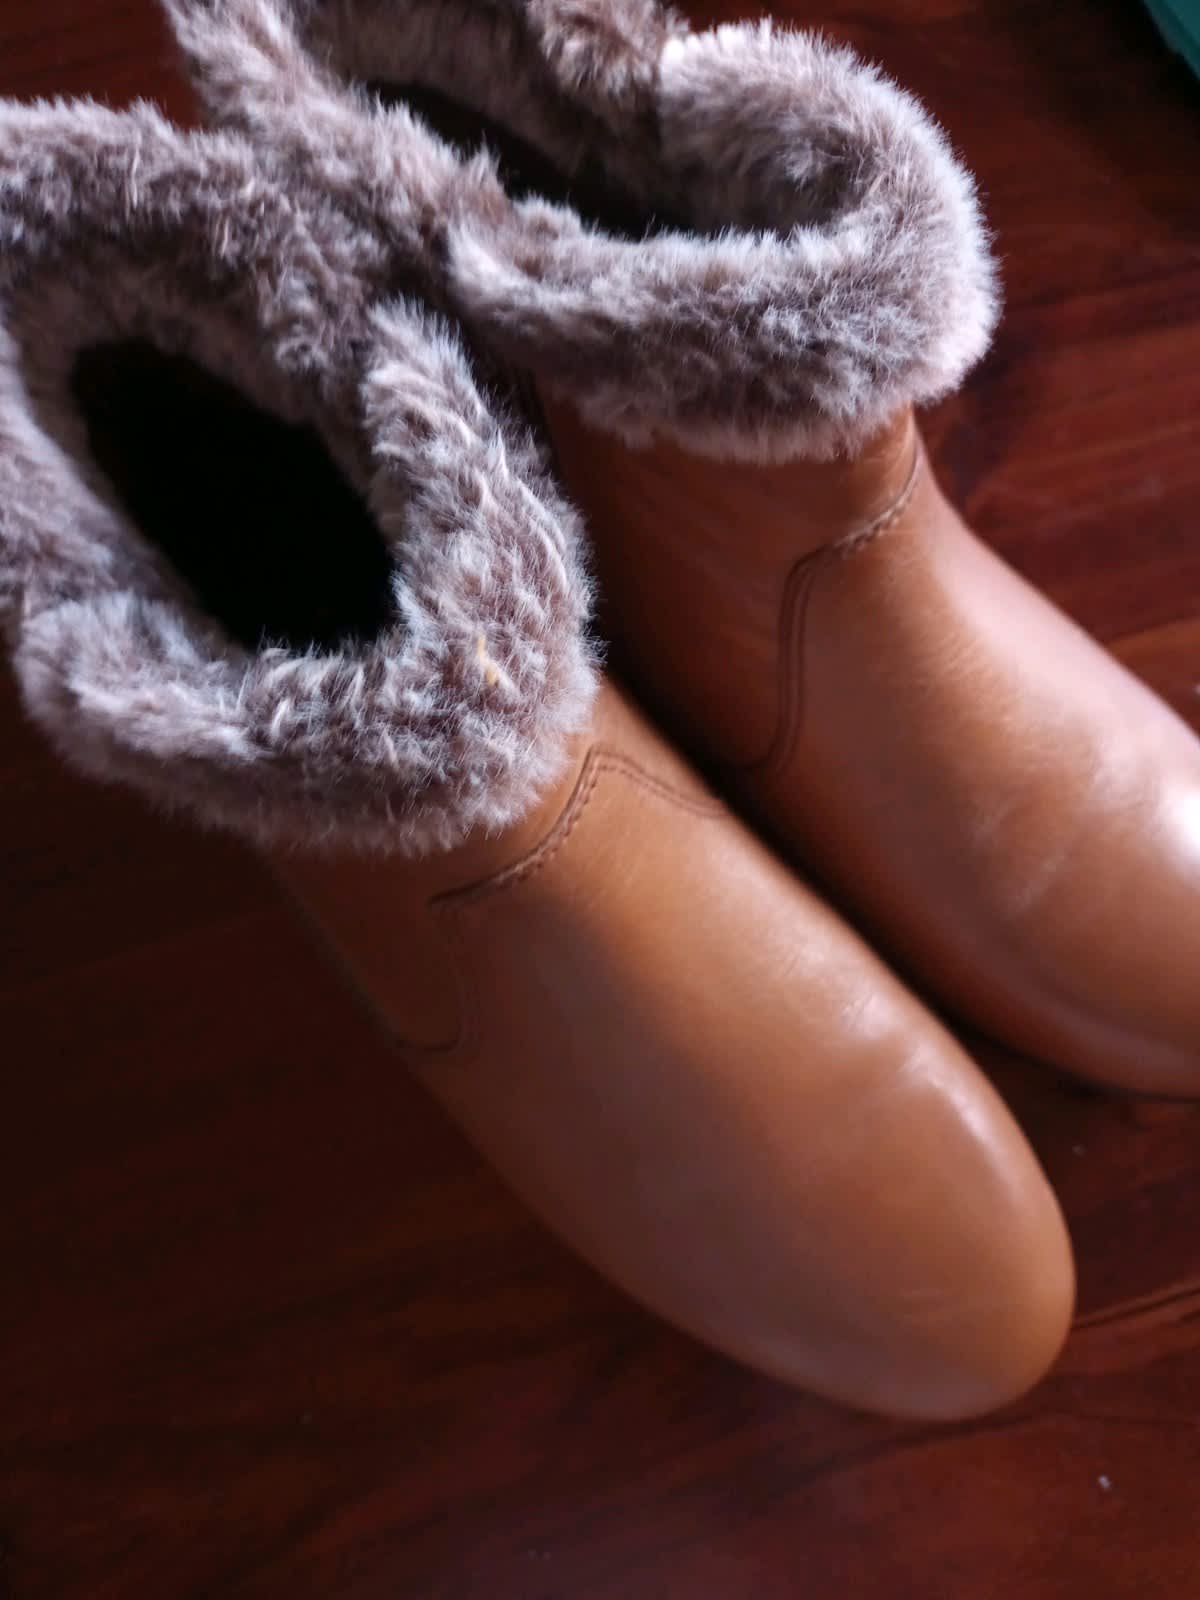 RM Williams Chinchilla boots - Bordeaux Size 8, Men's Shoes, Gumtree  Australia Queanbeyan Area - Queanbeyan